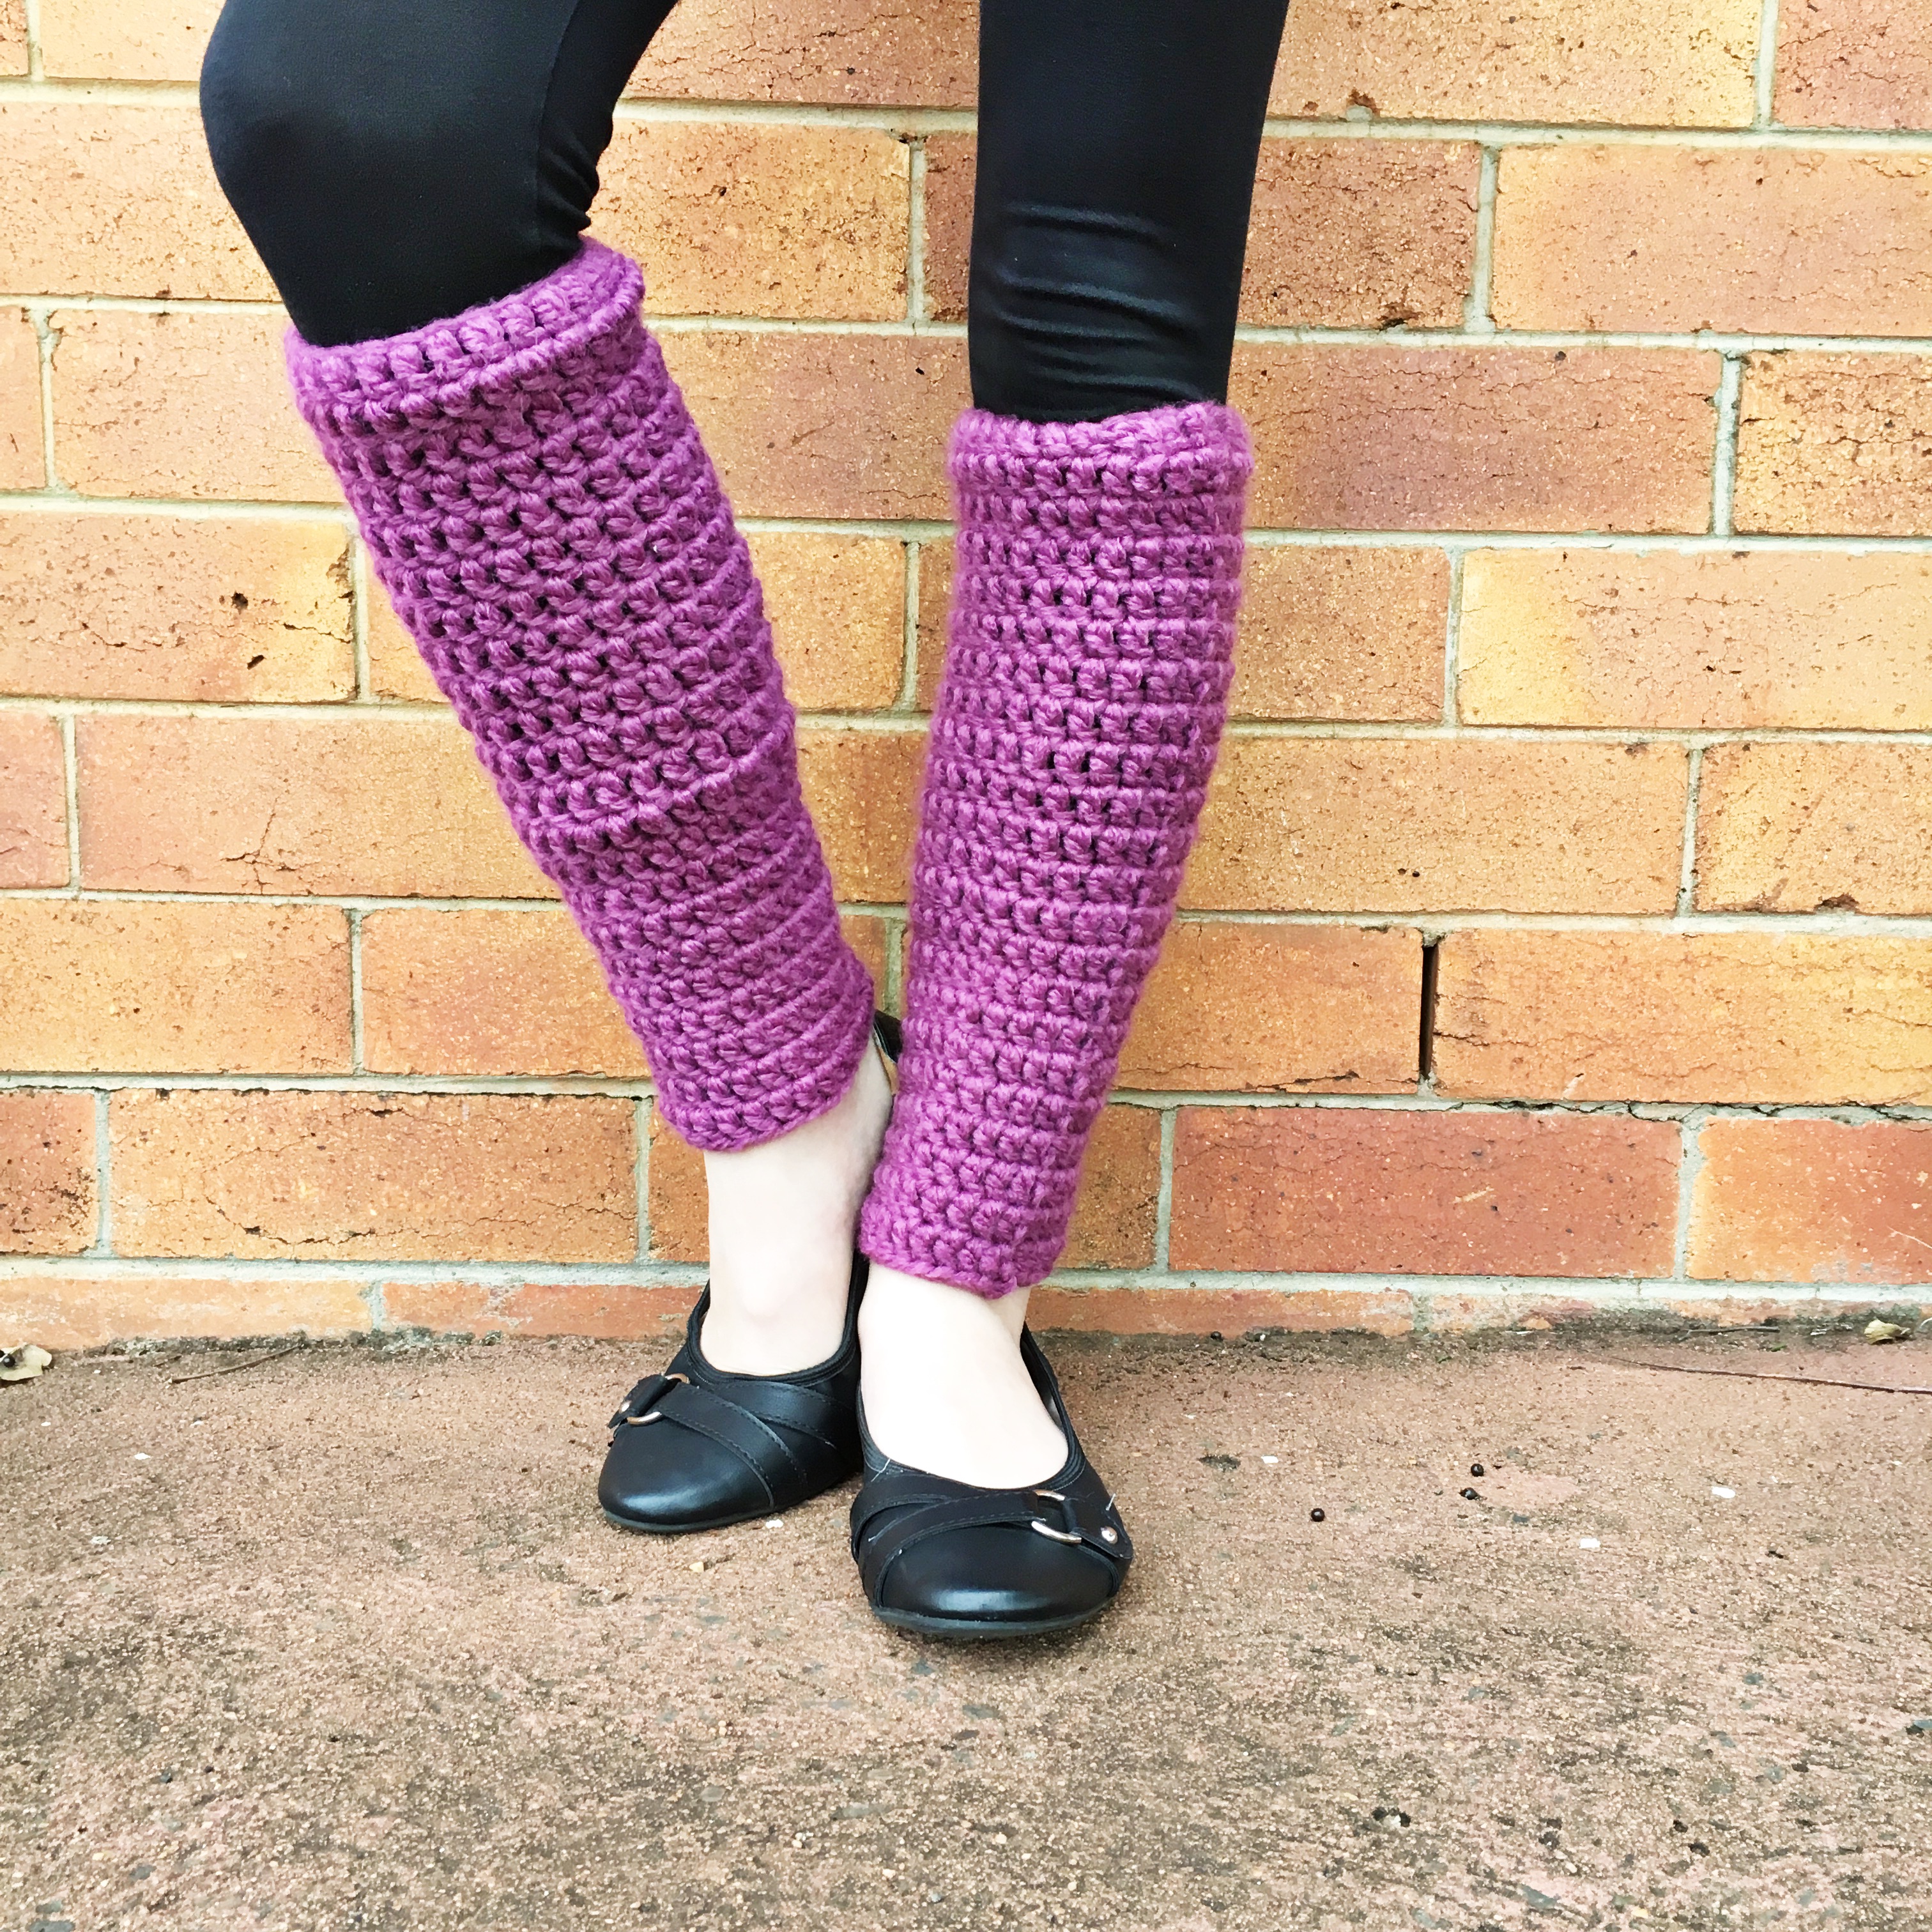 Beginner-Friendly Crochet Leg Warmers Free Pattern from B.Hooked